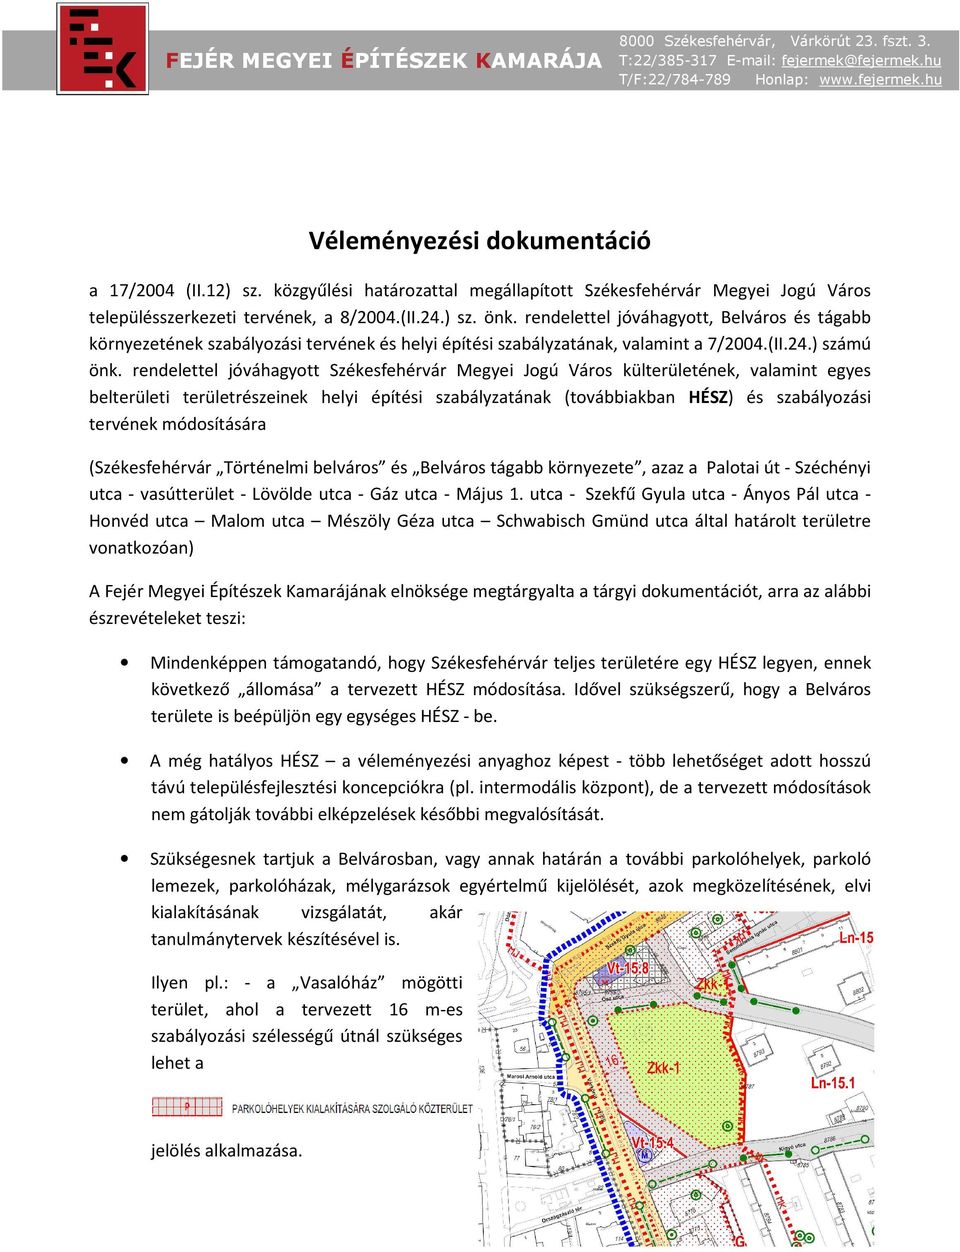 rendelettel jóváhagyott Székesfehérvár Megyei Jogú Város külterületének, valamint egyes belterületi területrészeinek helyi építési szabályzatának (továbbiakban HÉSZ) és szabályozási tervének